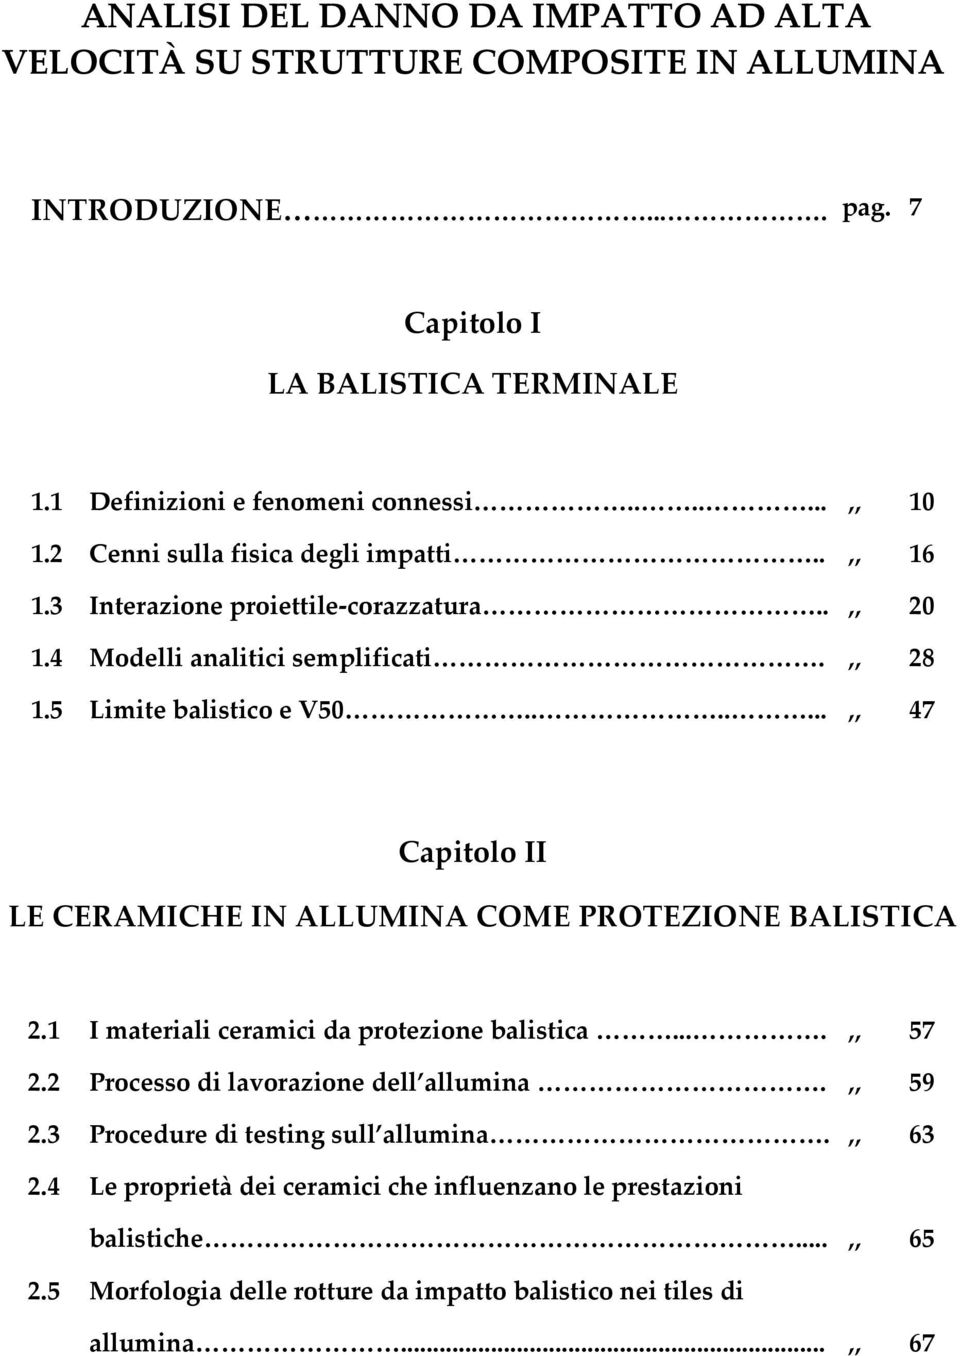 ......,, 47 Capitolo II LE CERAMICHE IN ALLUMINA COME PROTEZIONE BALISTICA 2.1 I materiali ceramici da protezione balistica....,, 57 2.2 Processo di lavorazione dell allumina.,, 59 2.